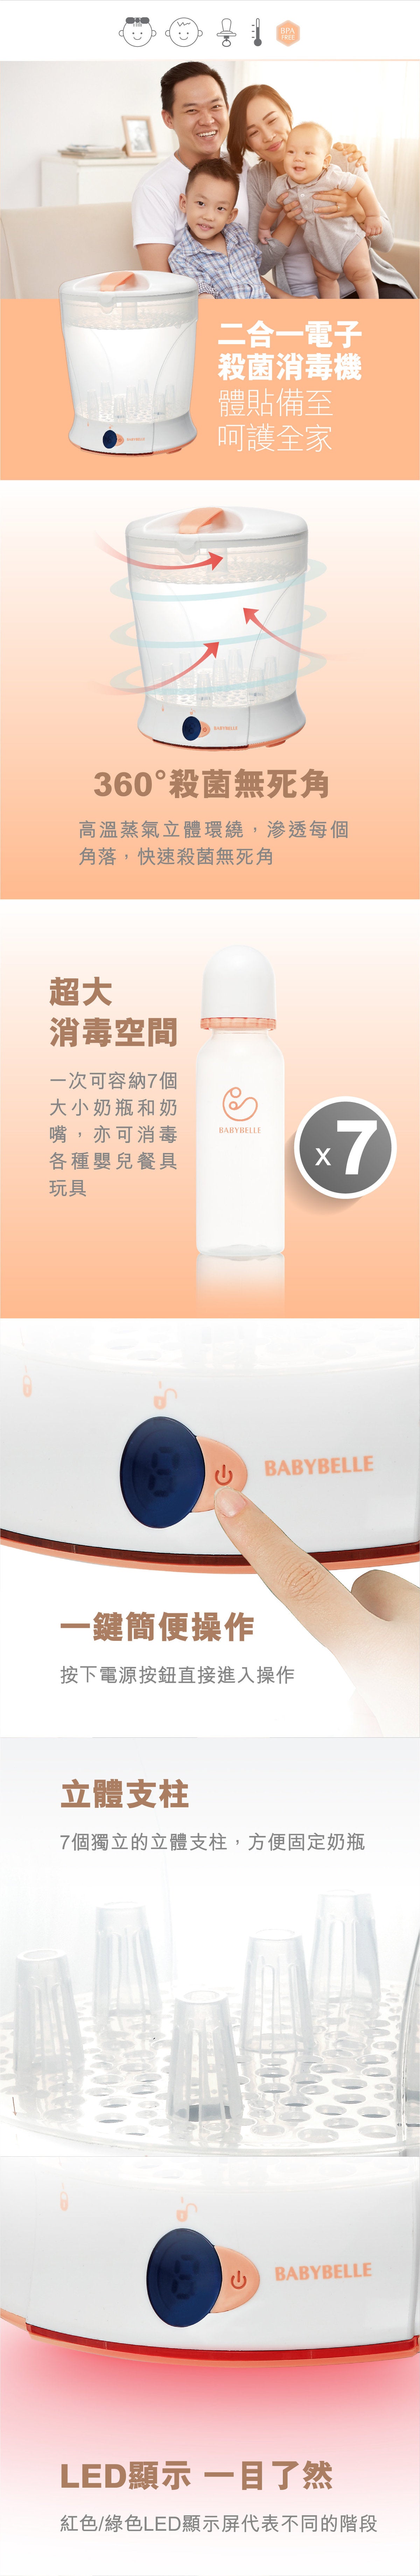 [超級優惠套裝] Babybelle 電子奶樽消毒鍋連電子暖奶器套裝